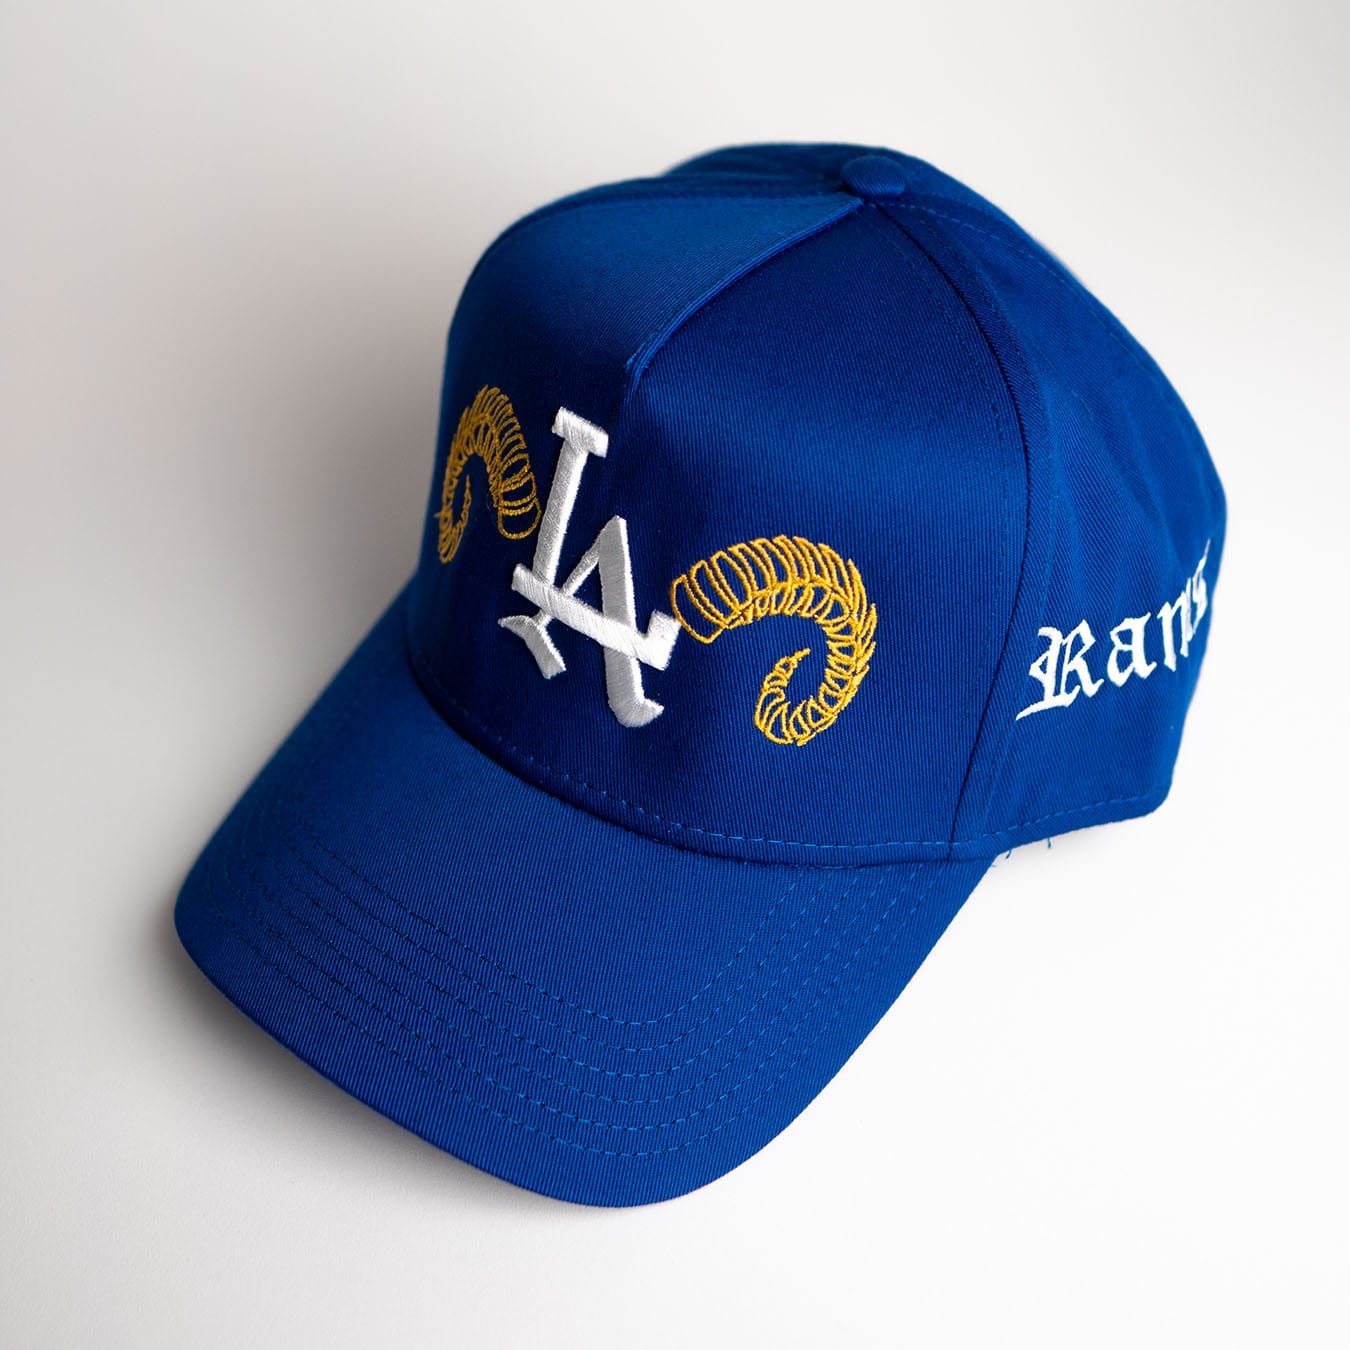 LA 'Rams' Premium Snapback in Royal Blue Loyal Origins 